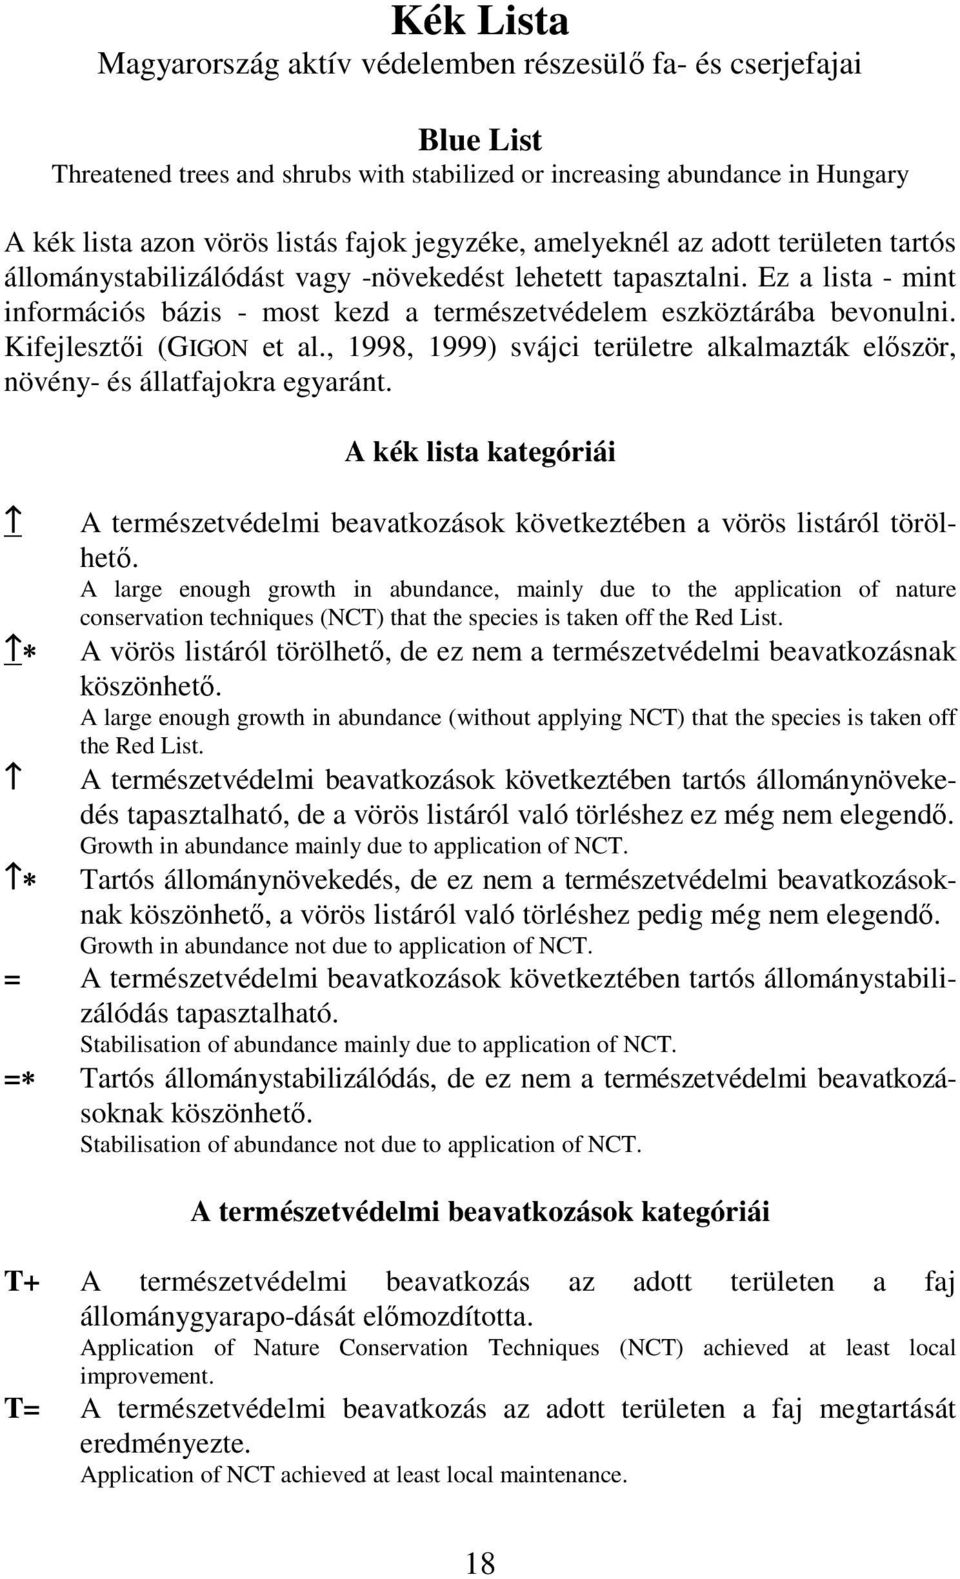 Kifejlesztıi (GIGON et al., 1998, 1999) svájci területre alkalazták elıször, növény és állatfajokra egyaránt.